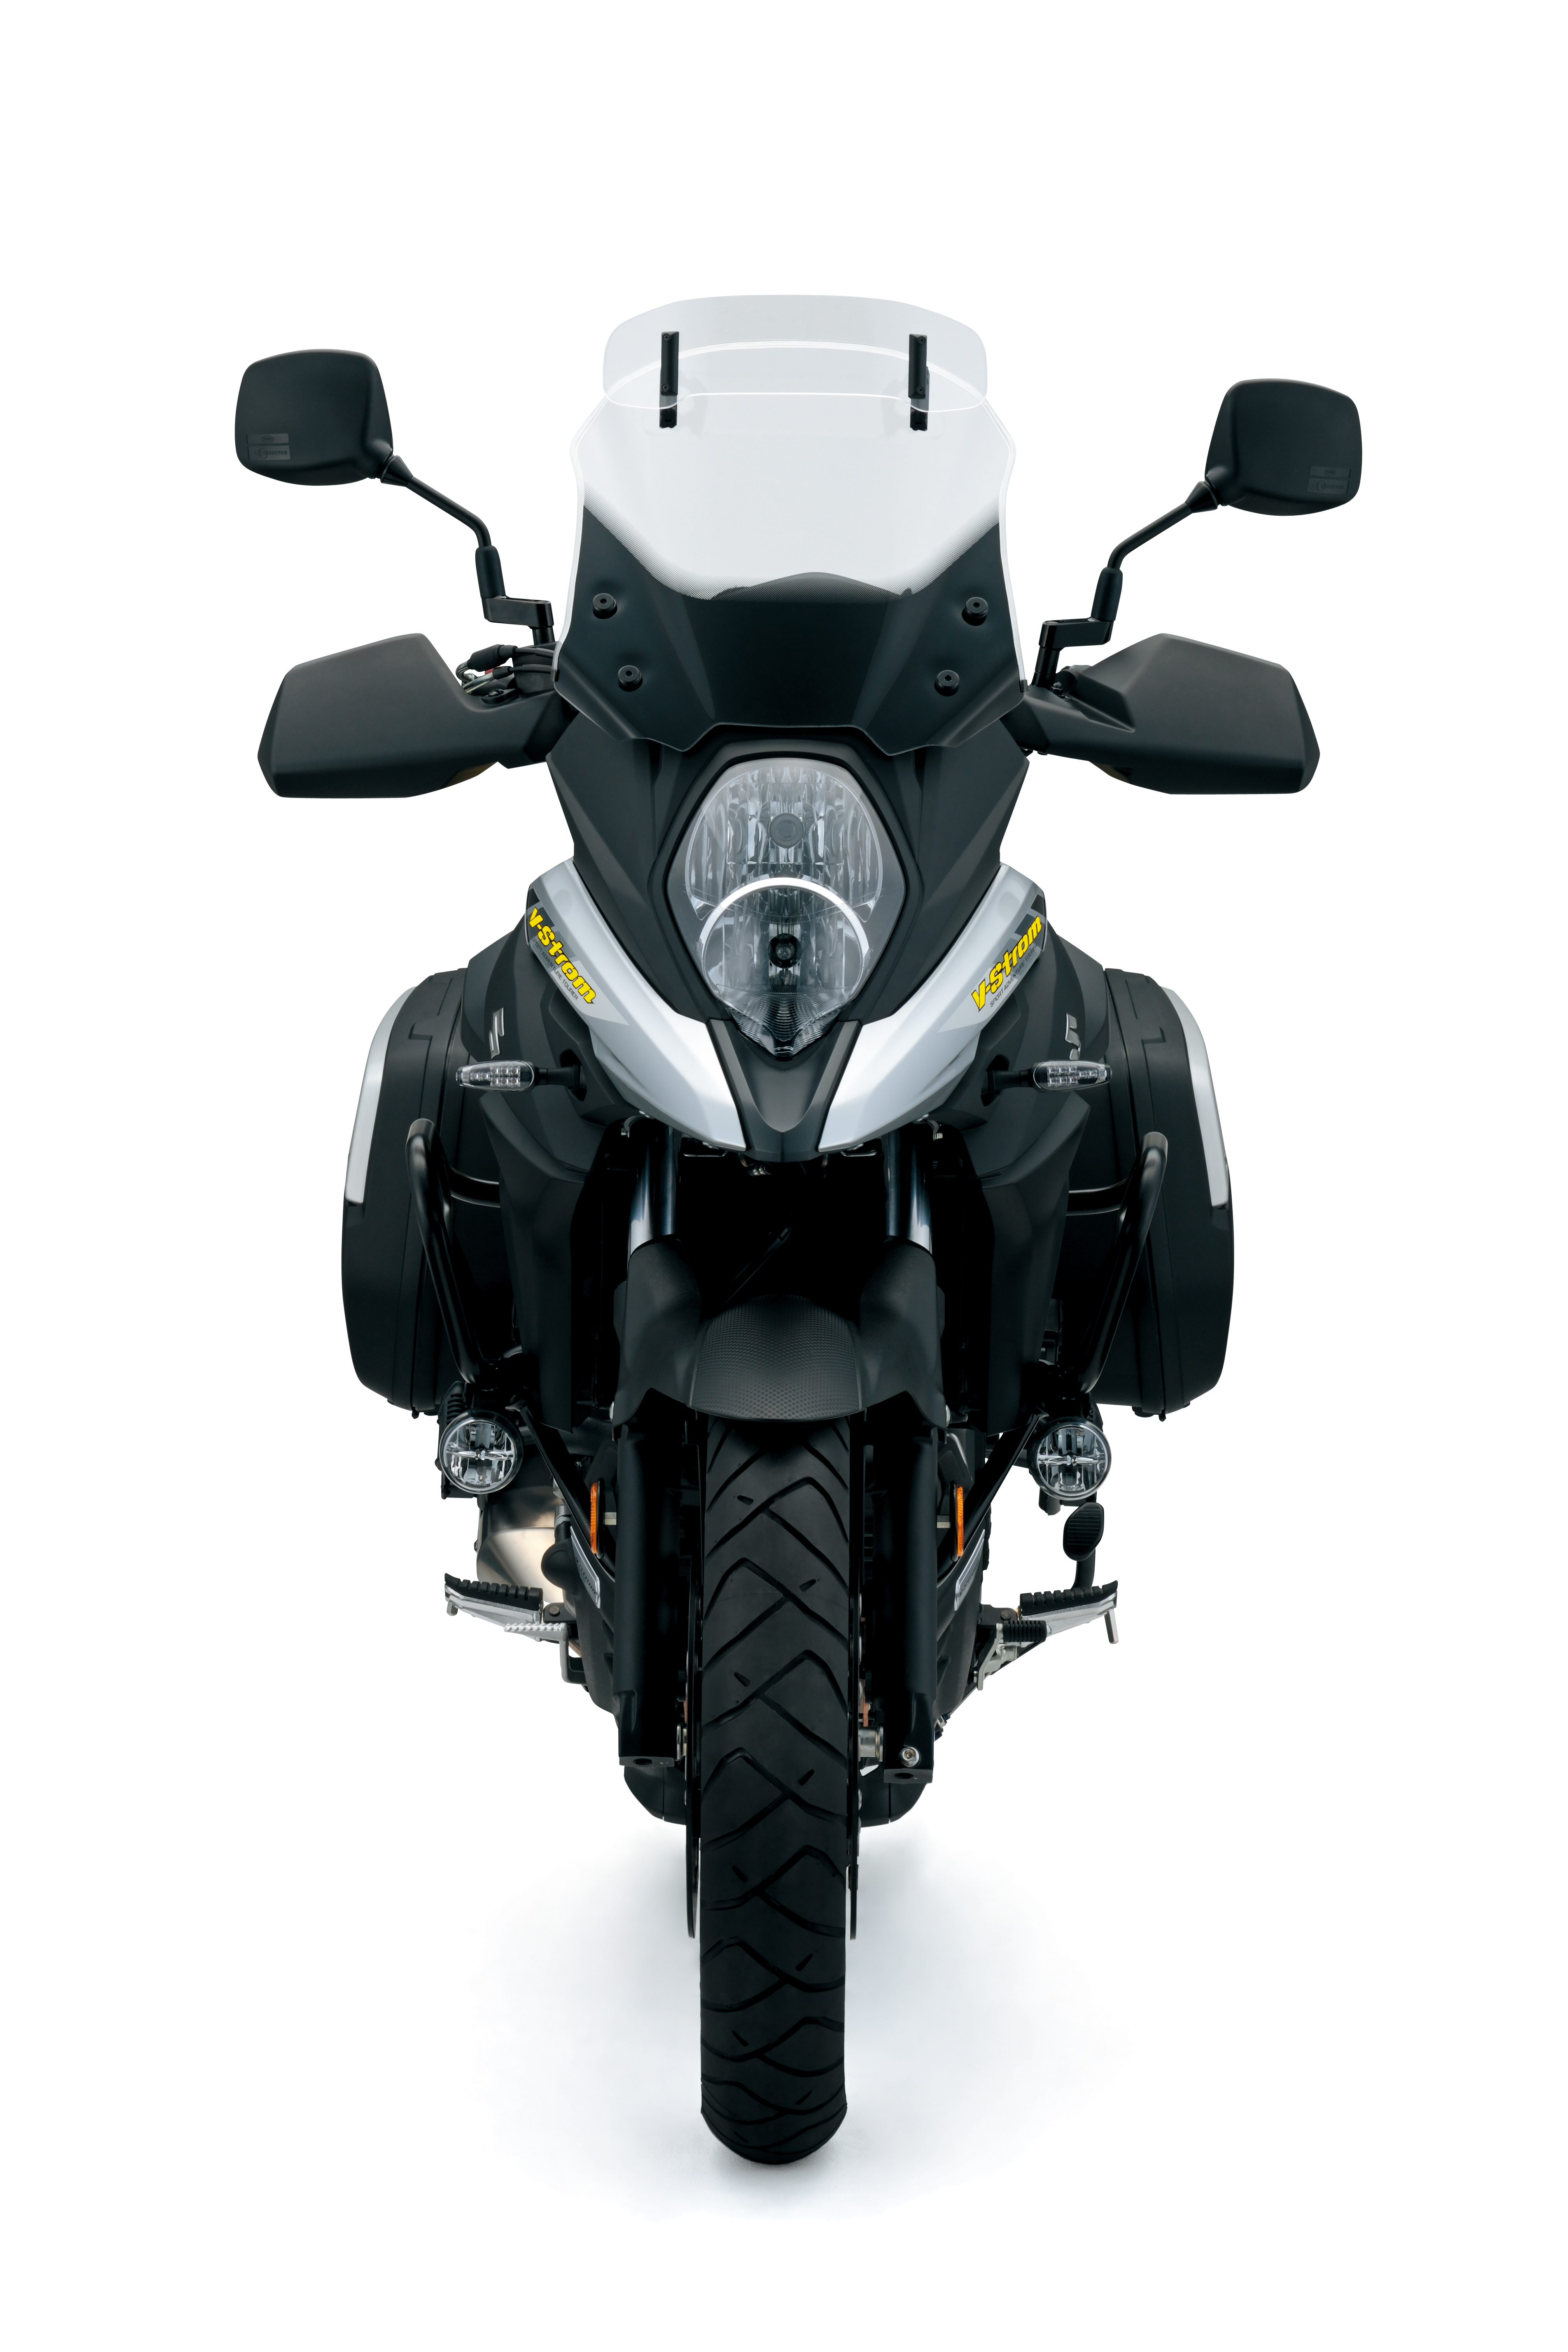 Suzuki updates V-Strom 650 range to look more like V-Strom 1000